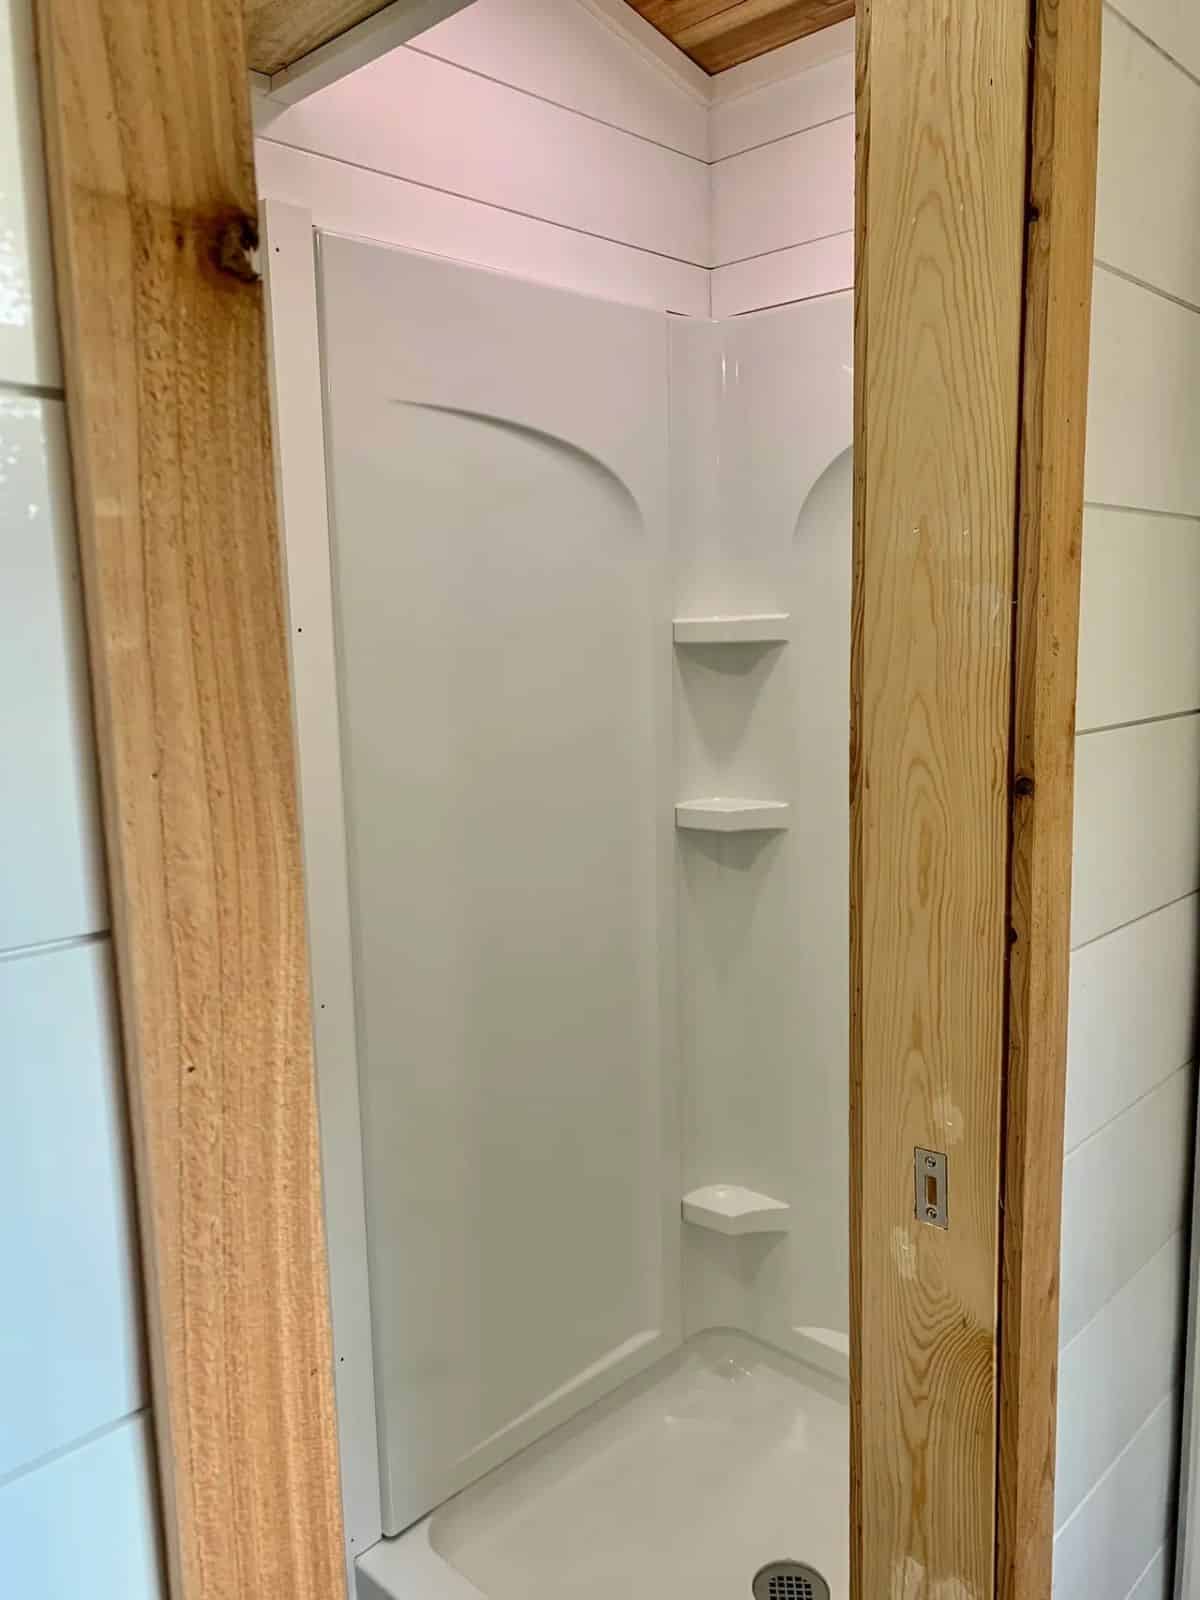 full lengthy shower area in bathroom